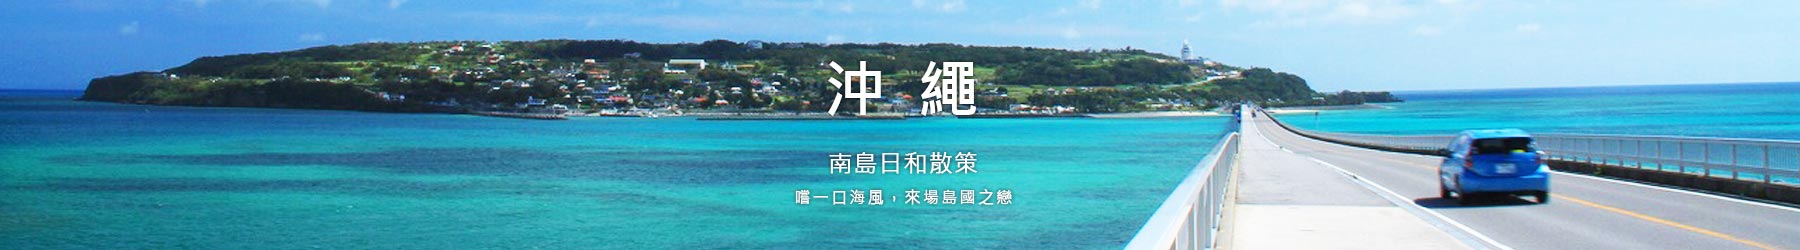 沖繩頂部形象banner